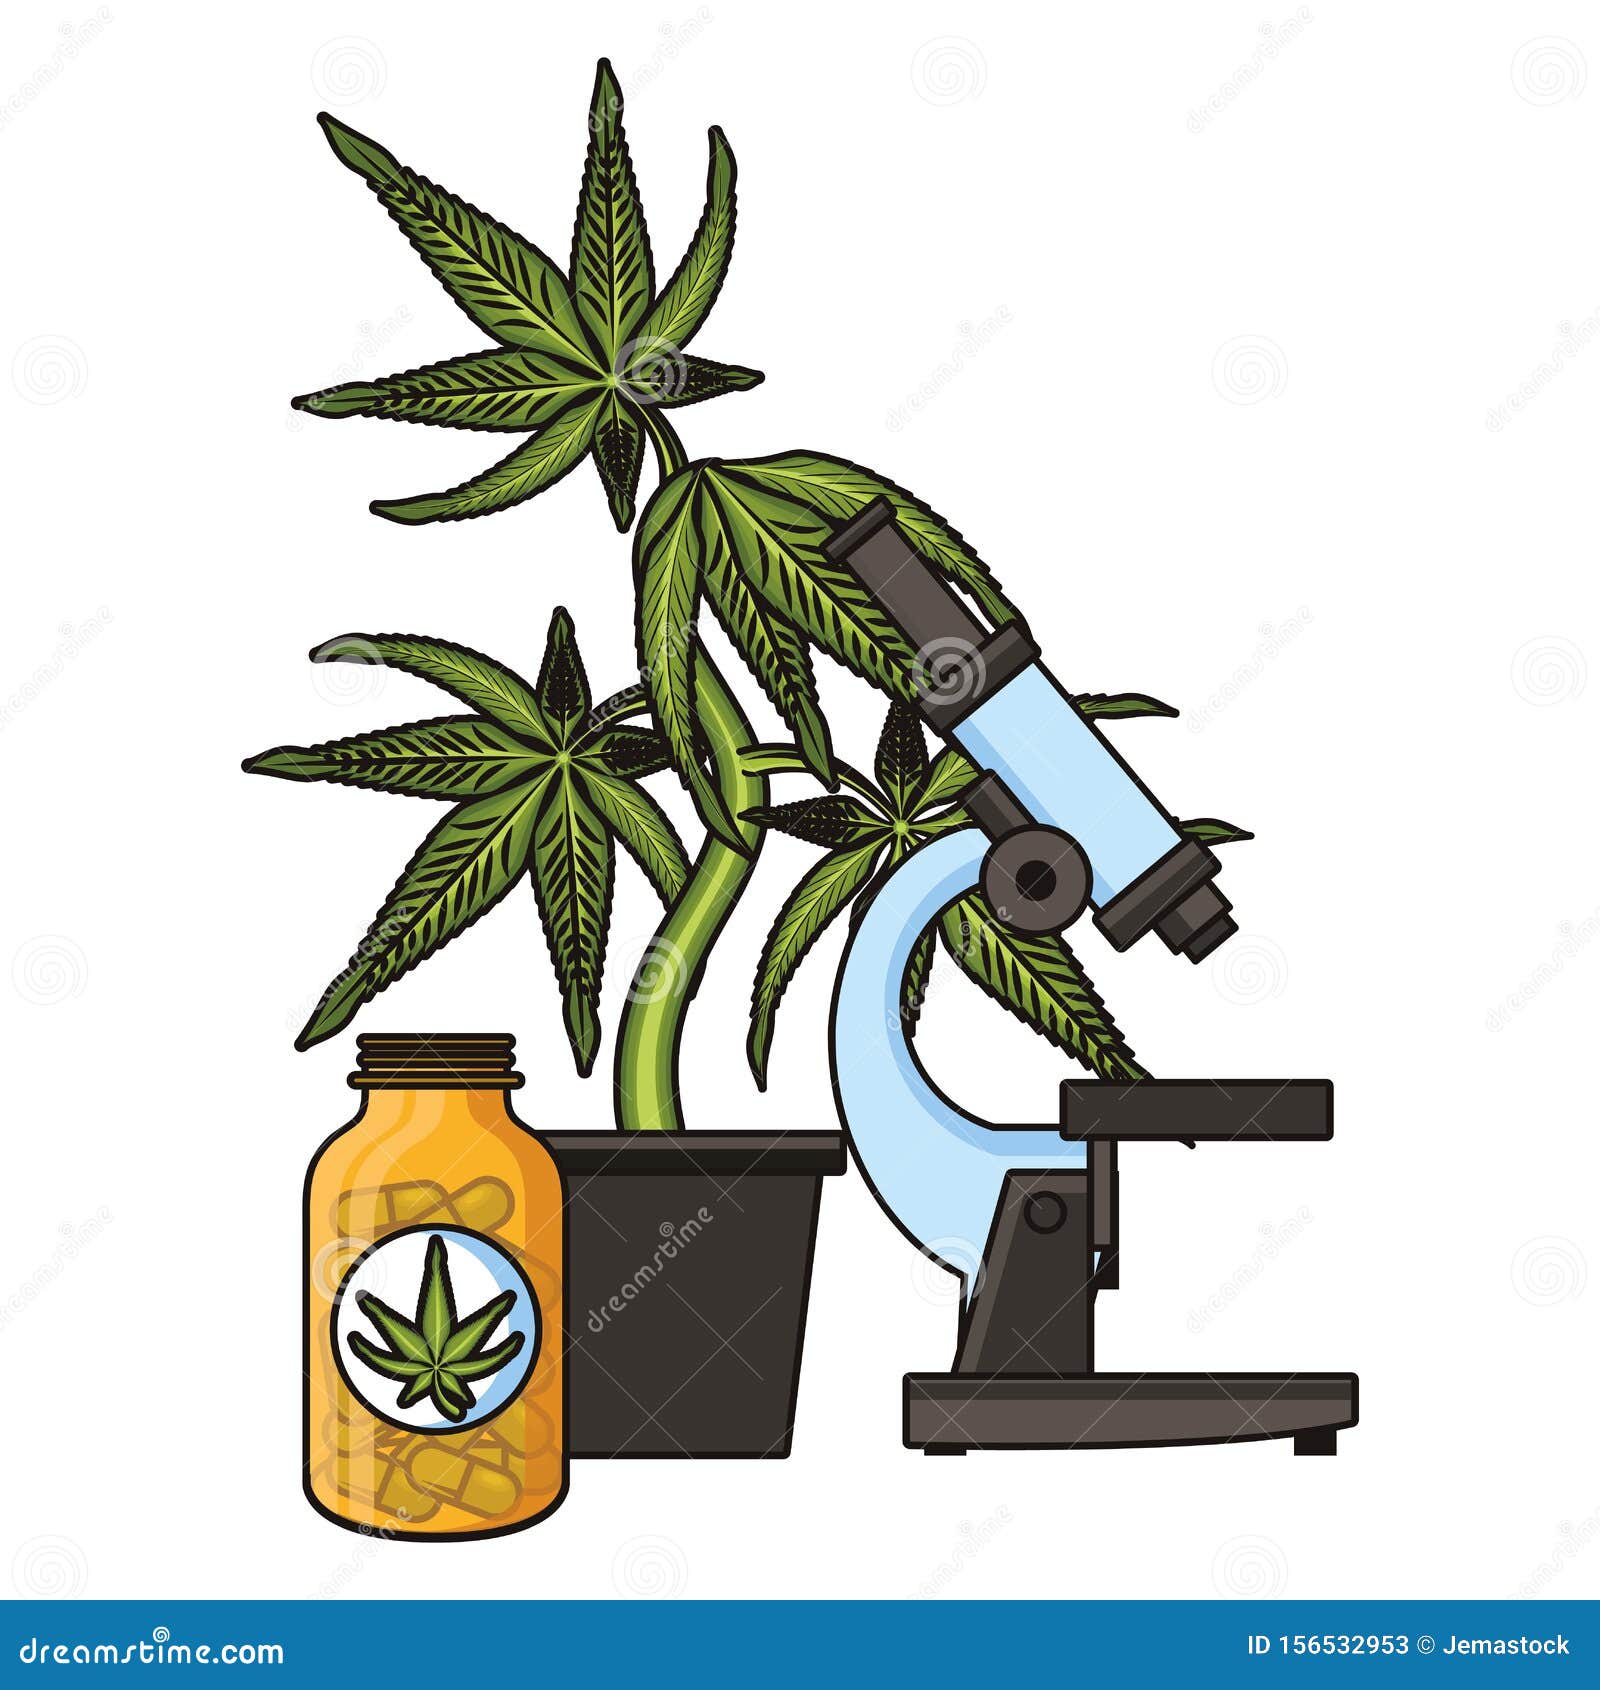 Марихуана карикатура марихуана севастополь